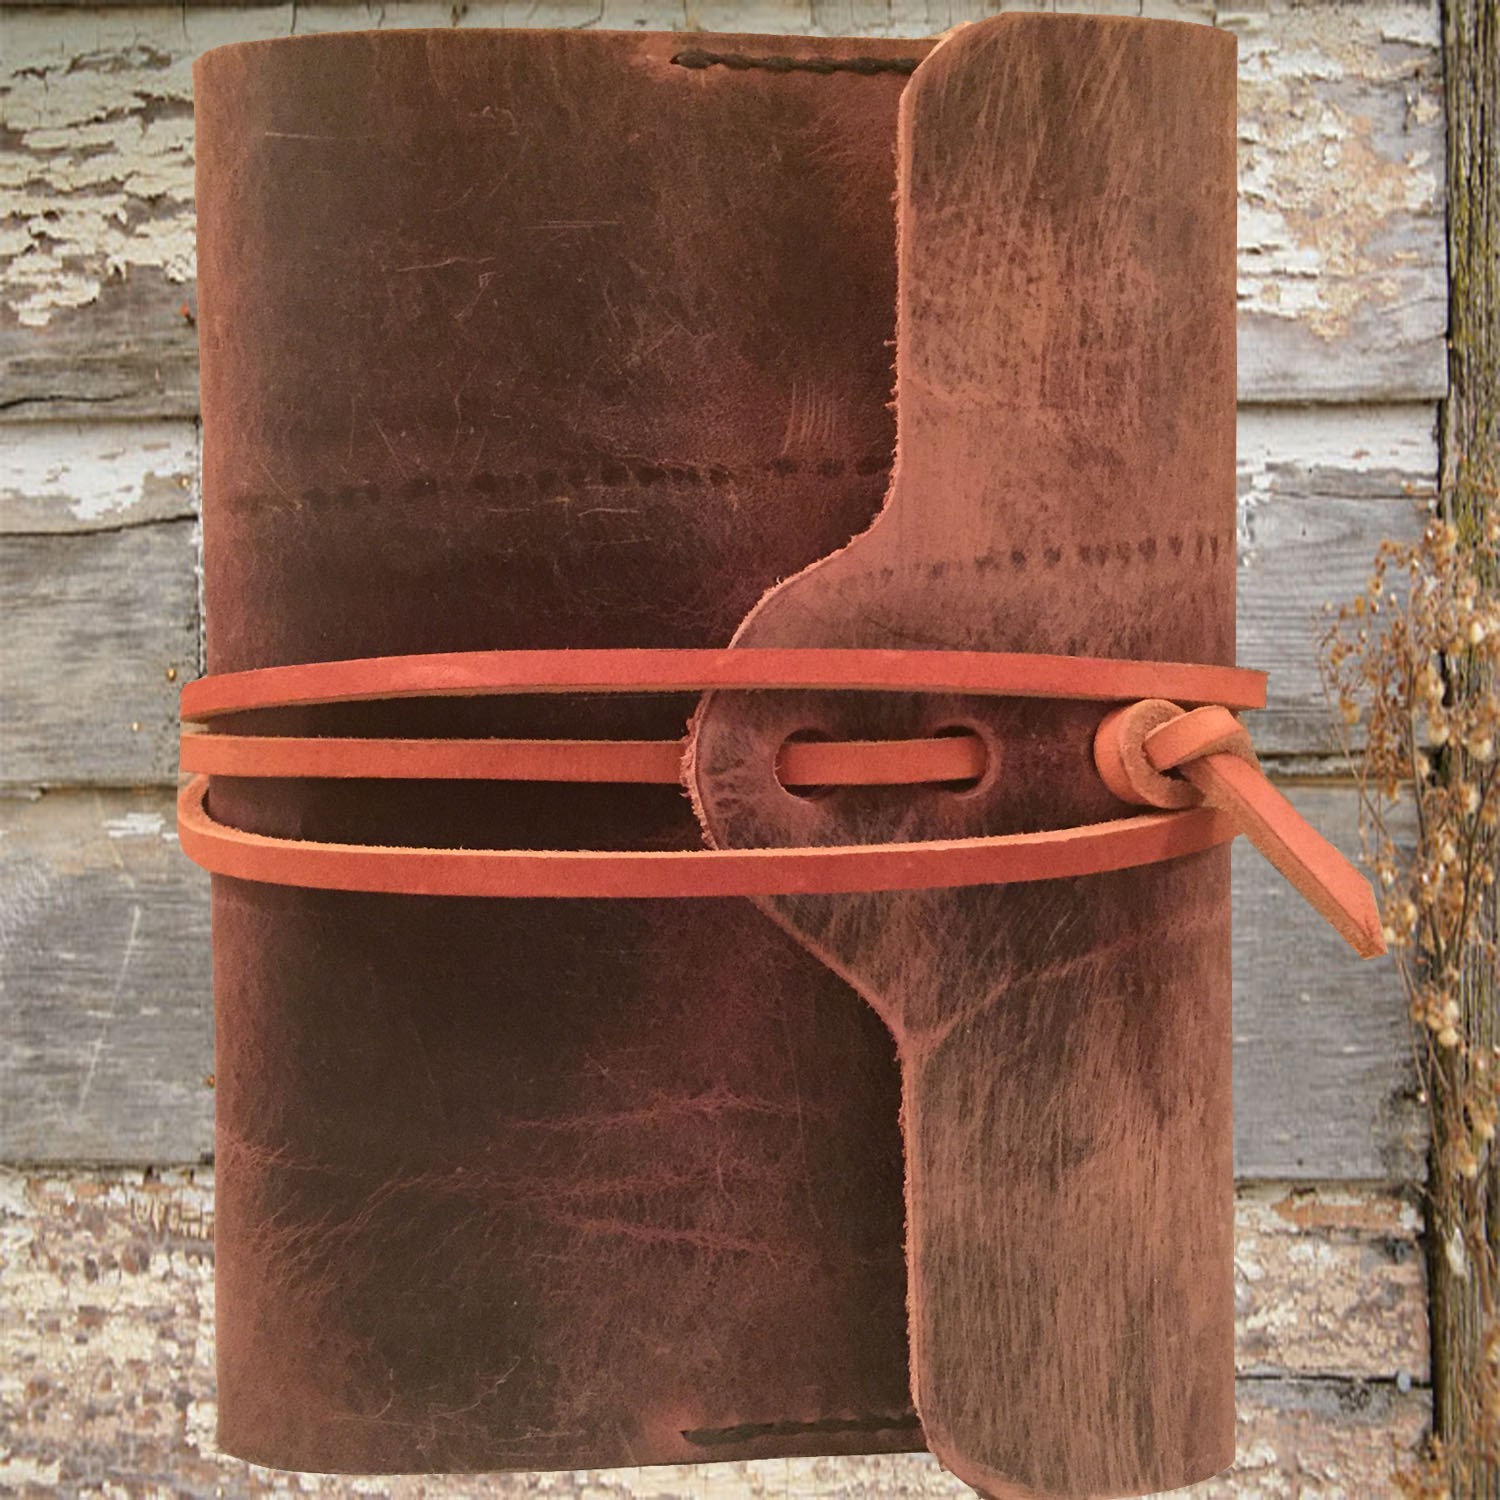 Wraparound refillable leather journal